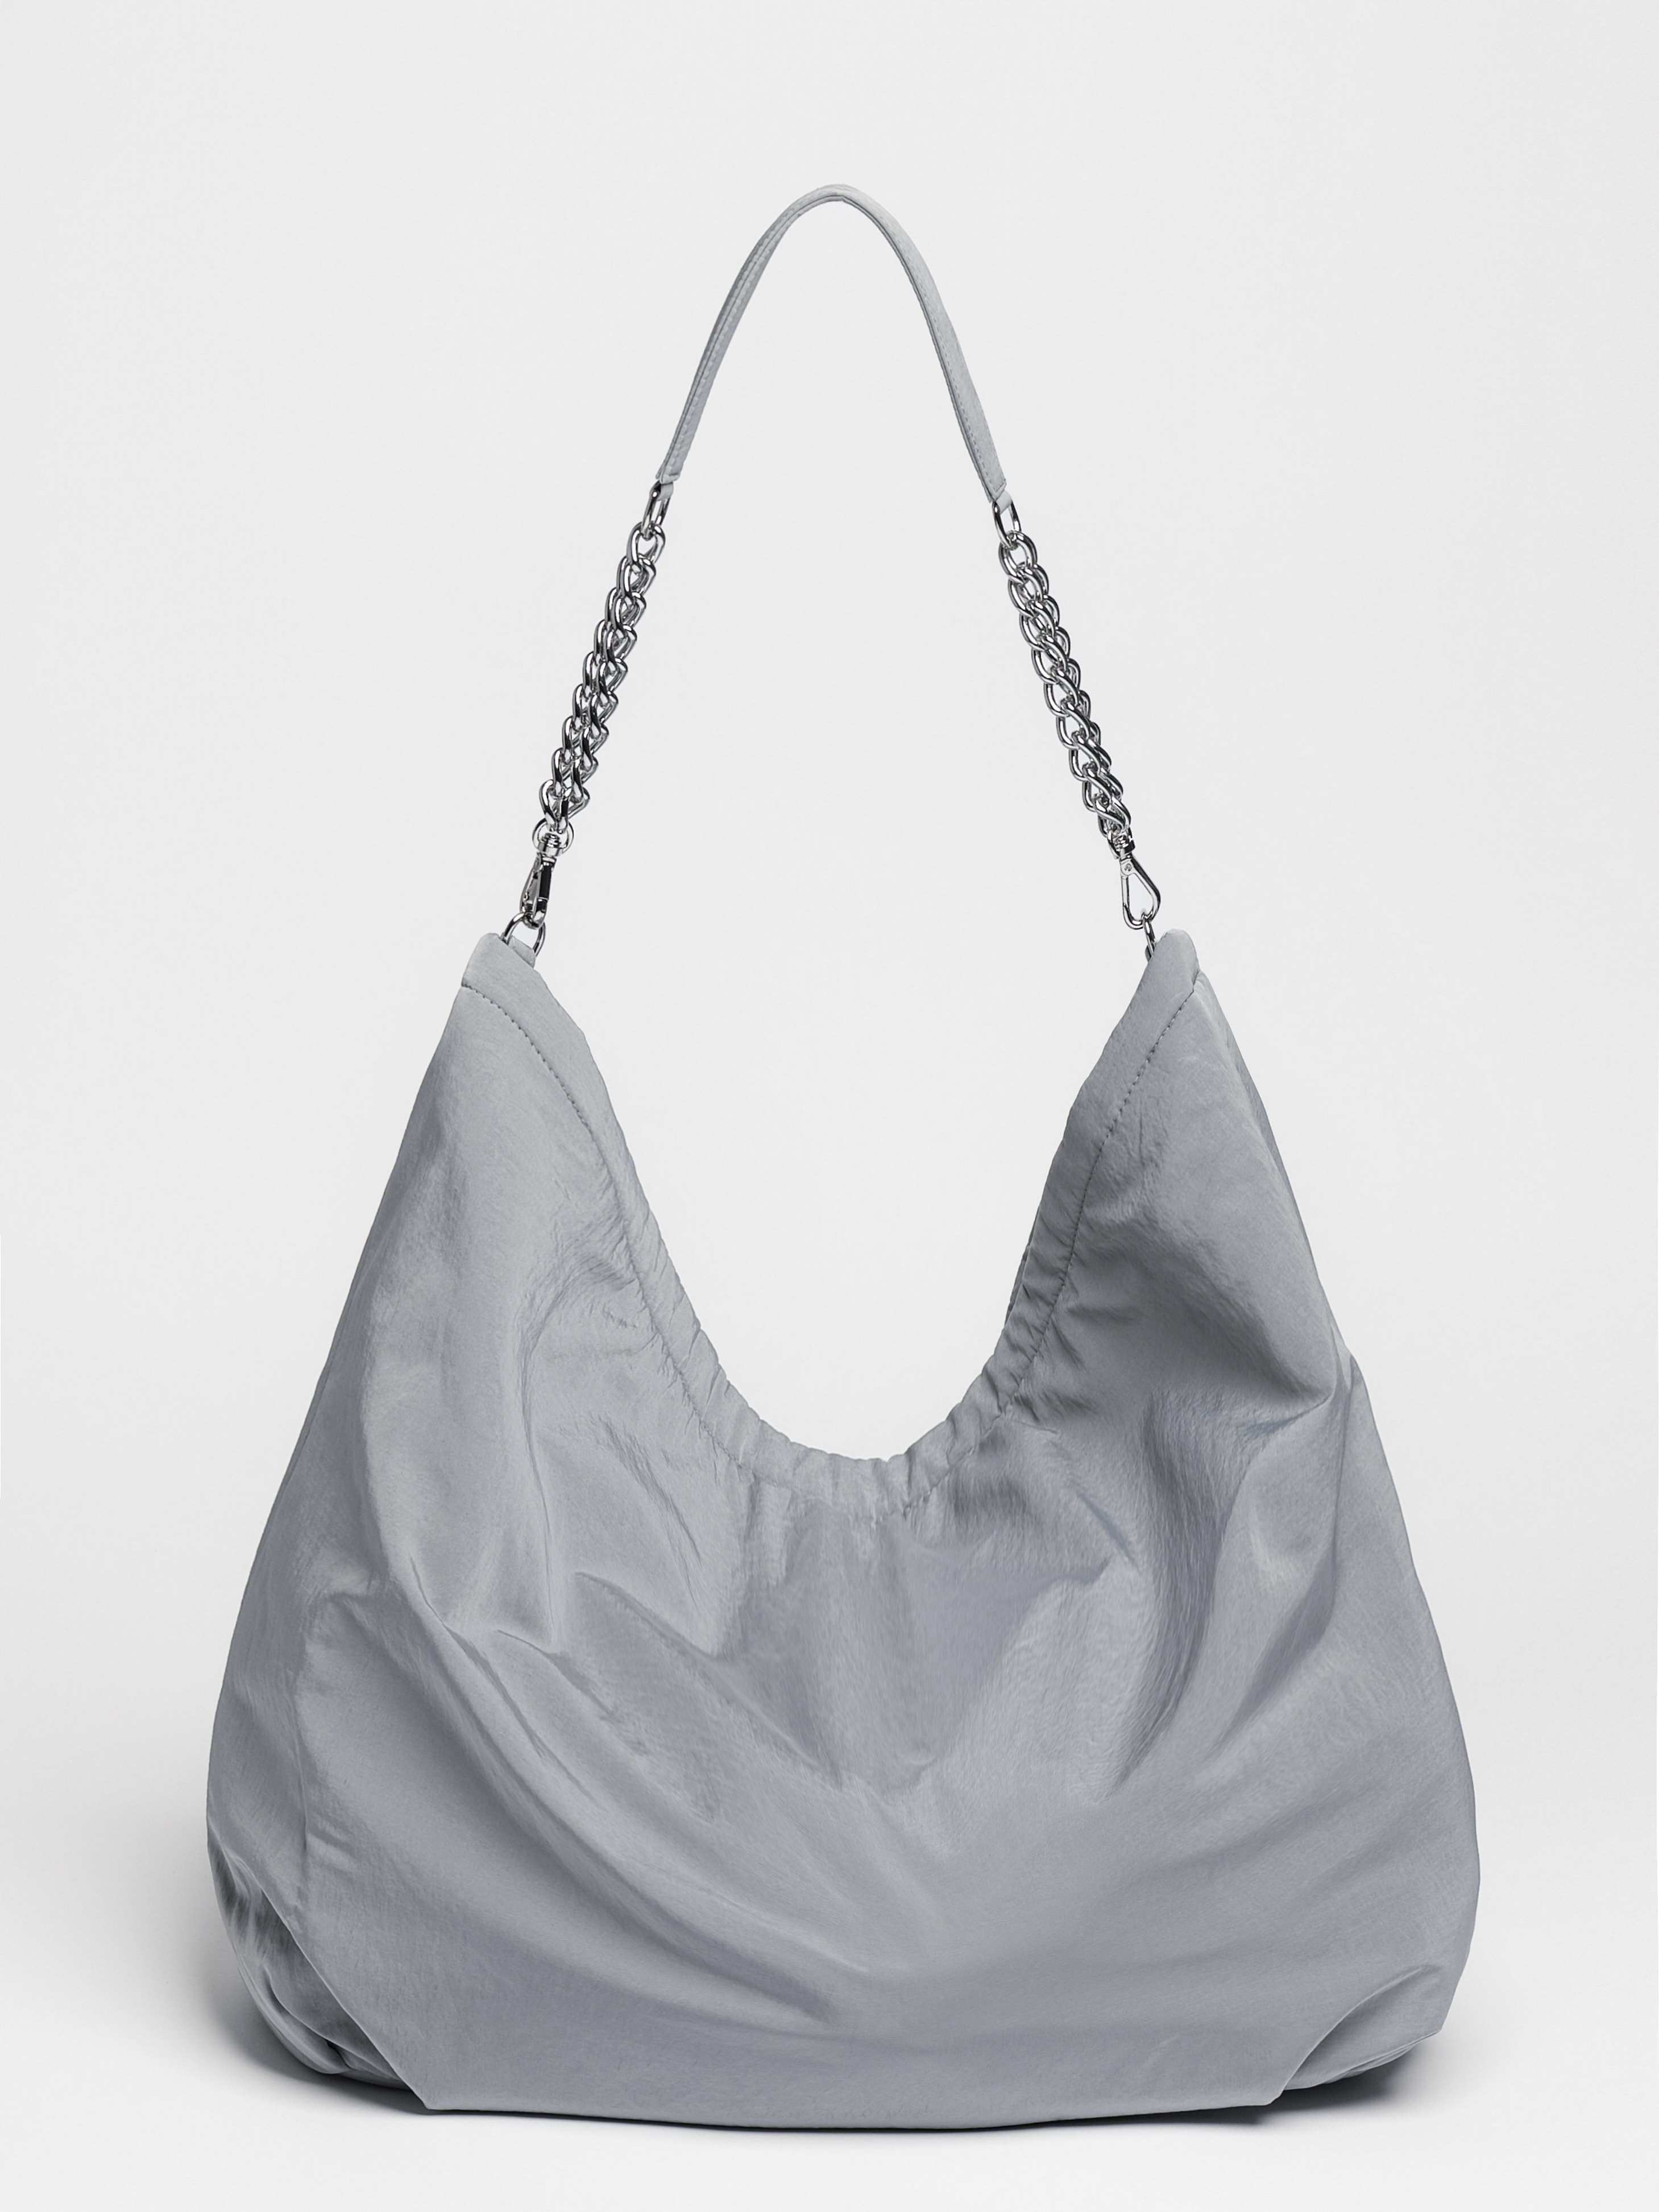 Chain Hobo Bag - Gray